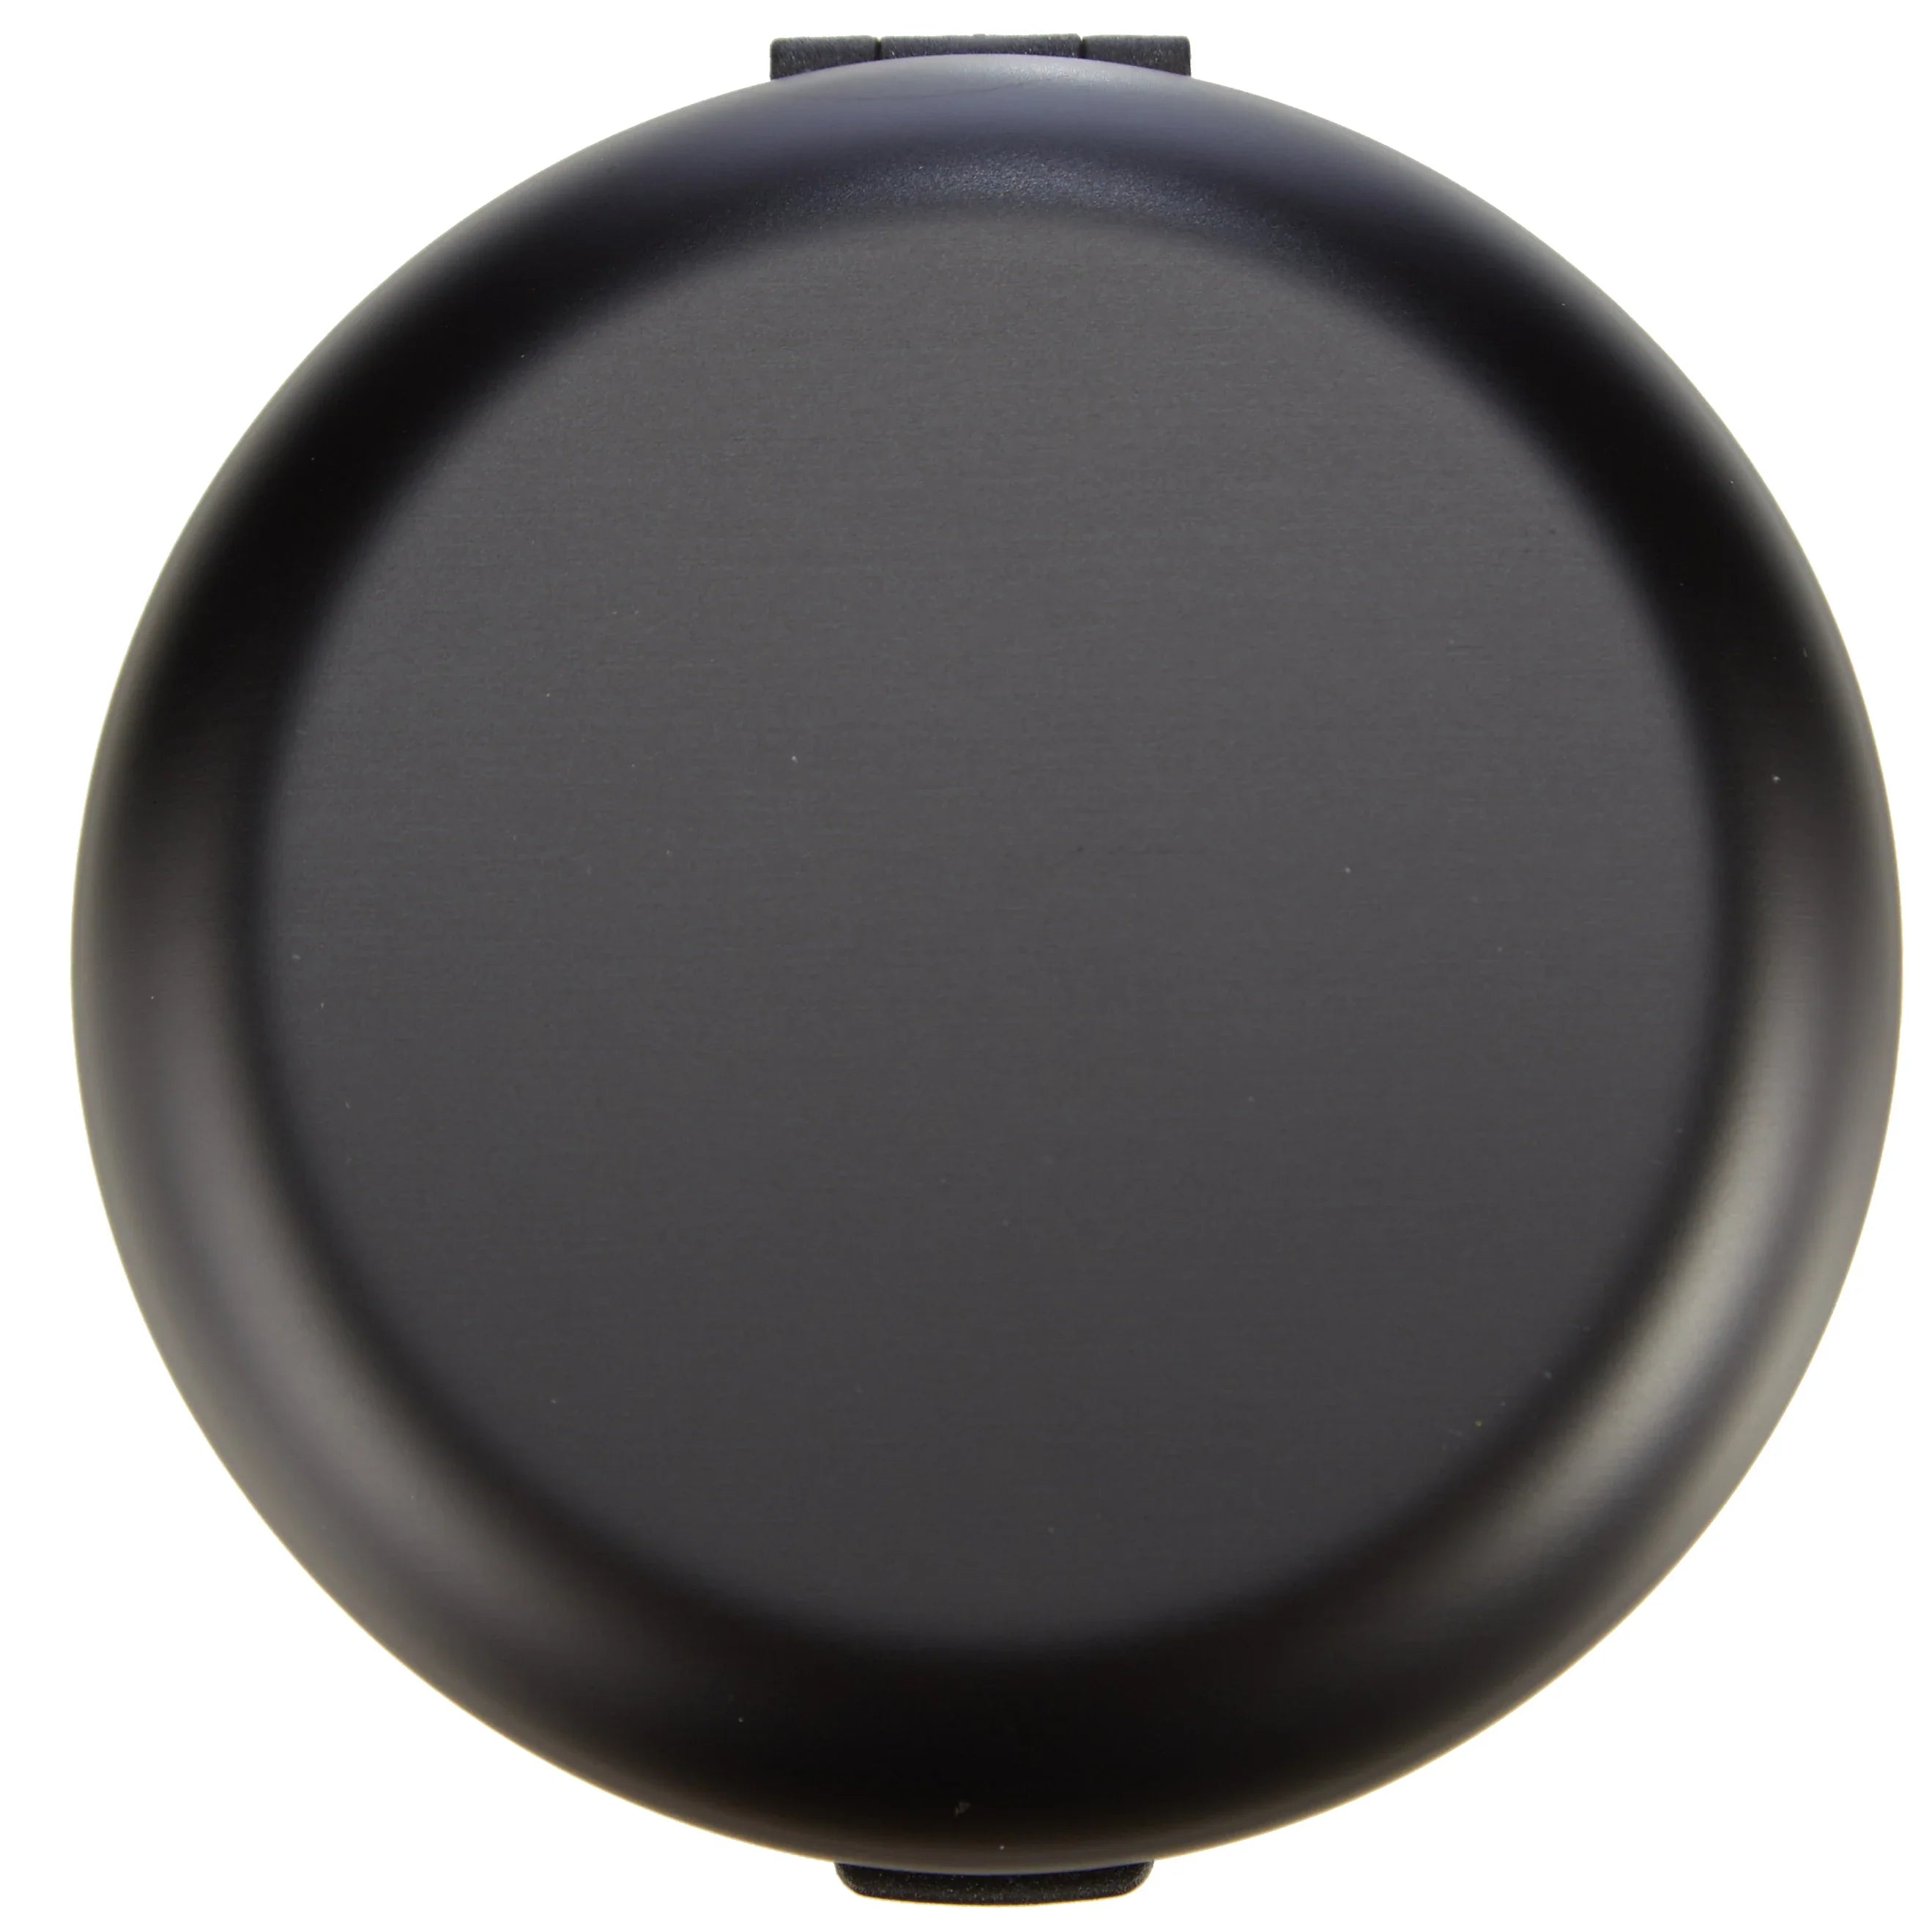 Ögon Designs Wallets Innovations Coin Dispenser 8 cm - schwarz